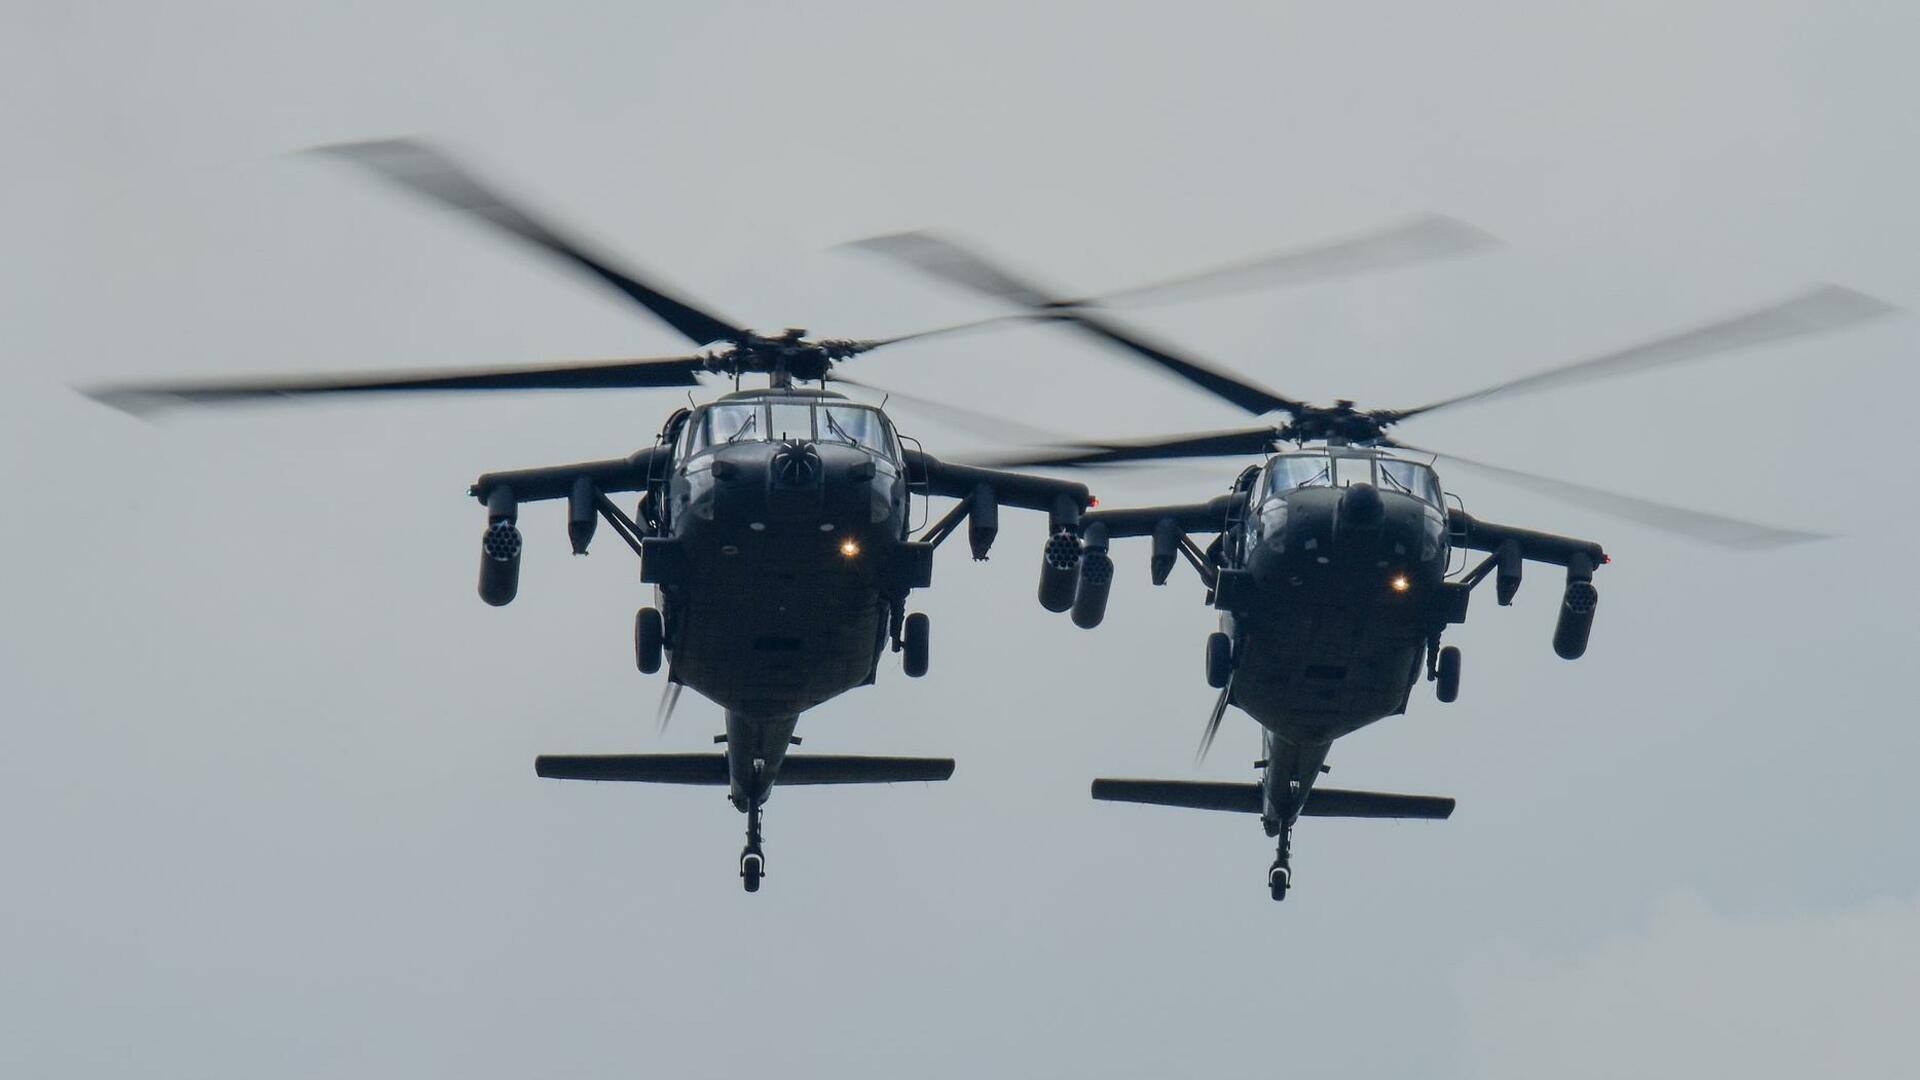 अमेरिका: प्रशिक्षण के दौरान सेना के 2 ब्लैकहॉक हेलिकॉप्टर दुर्घटनाग्रस्त, 9 मौतों की संभावना